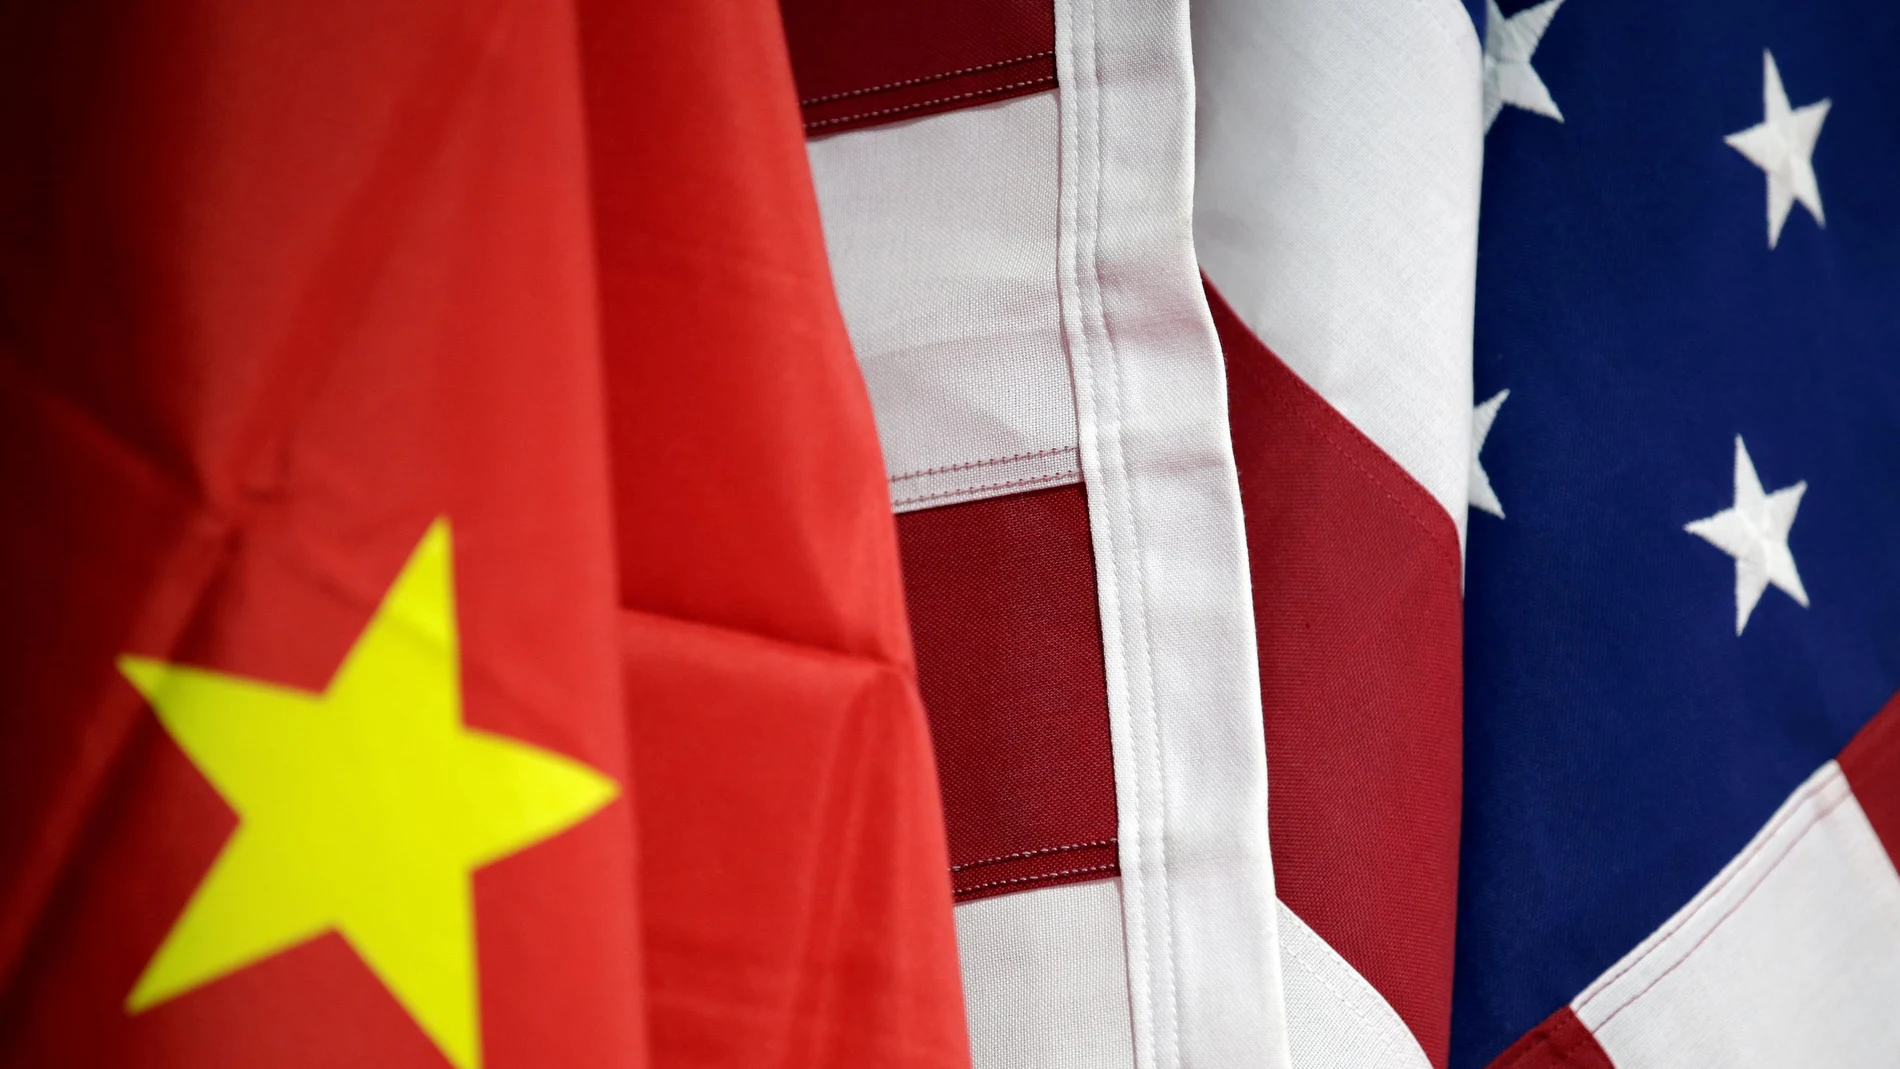 ¿Prefiere EE.UU o China?, plantea NC Report en una encuesta para LA RAZÓN. REUTERS/Jason Lee/File Photo